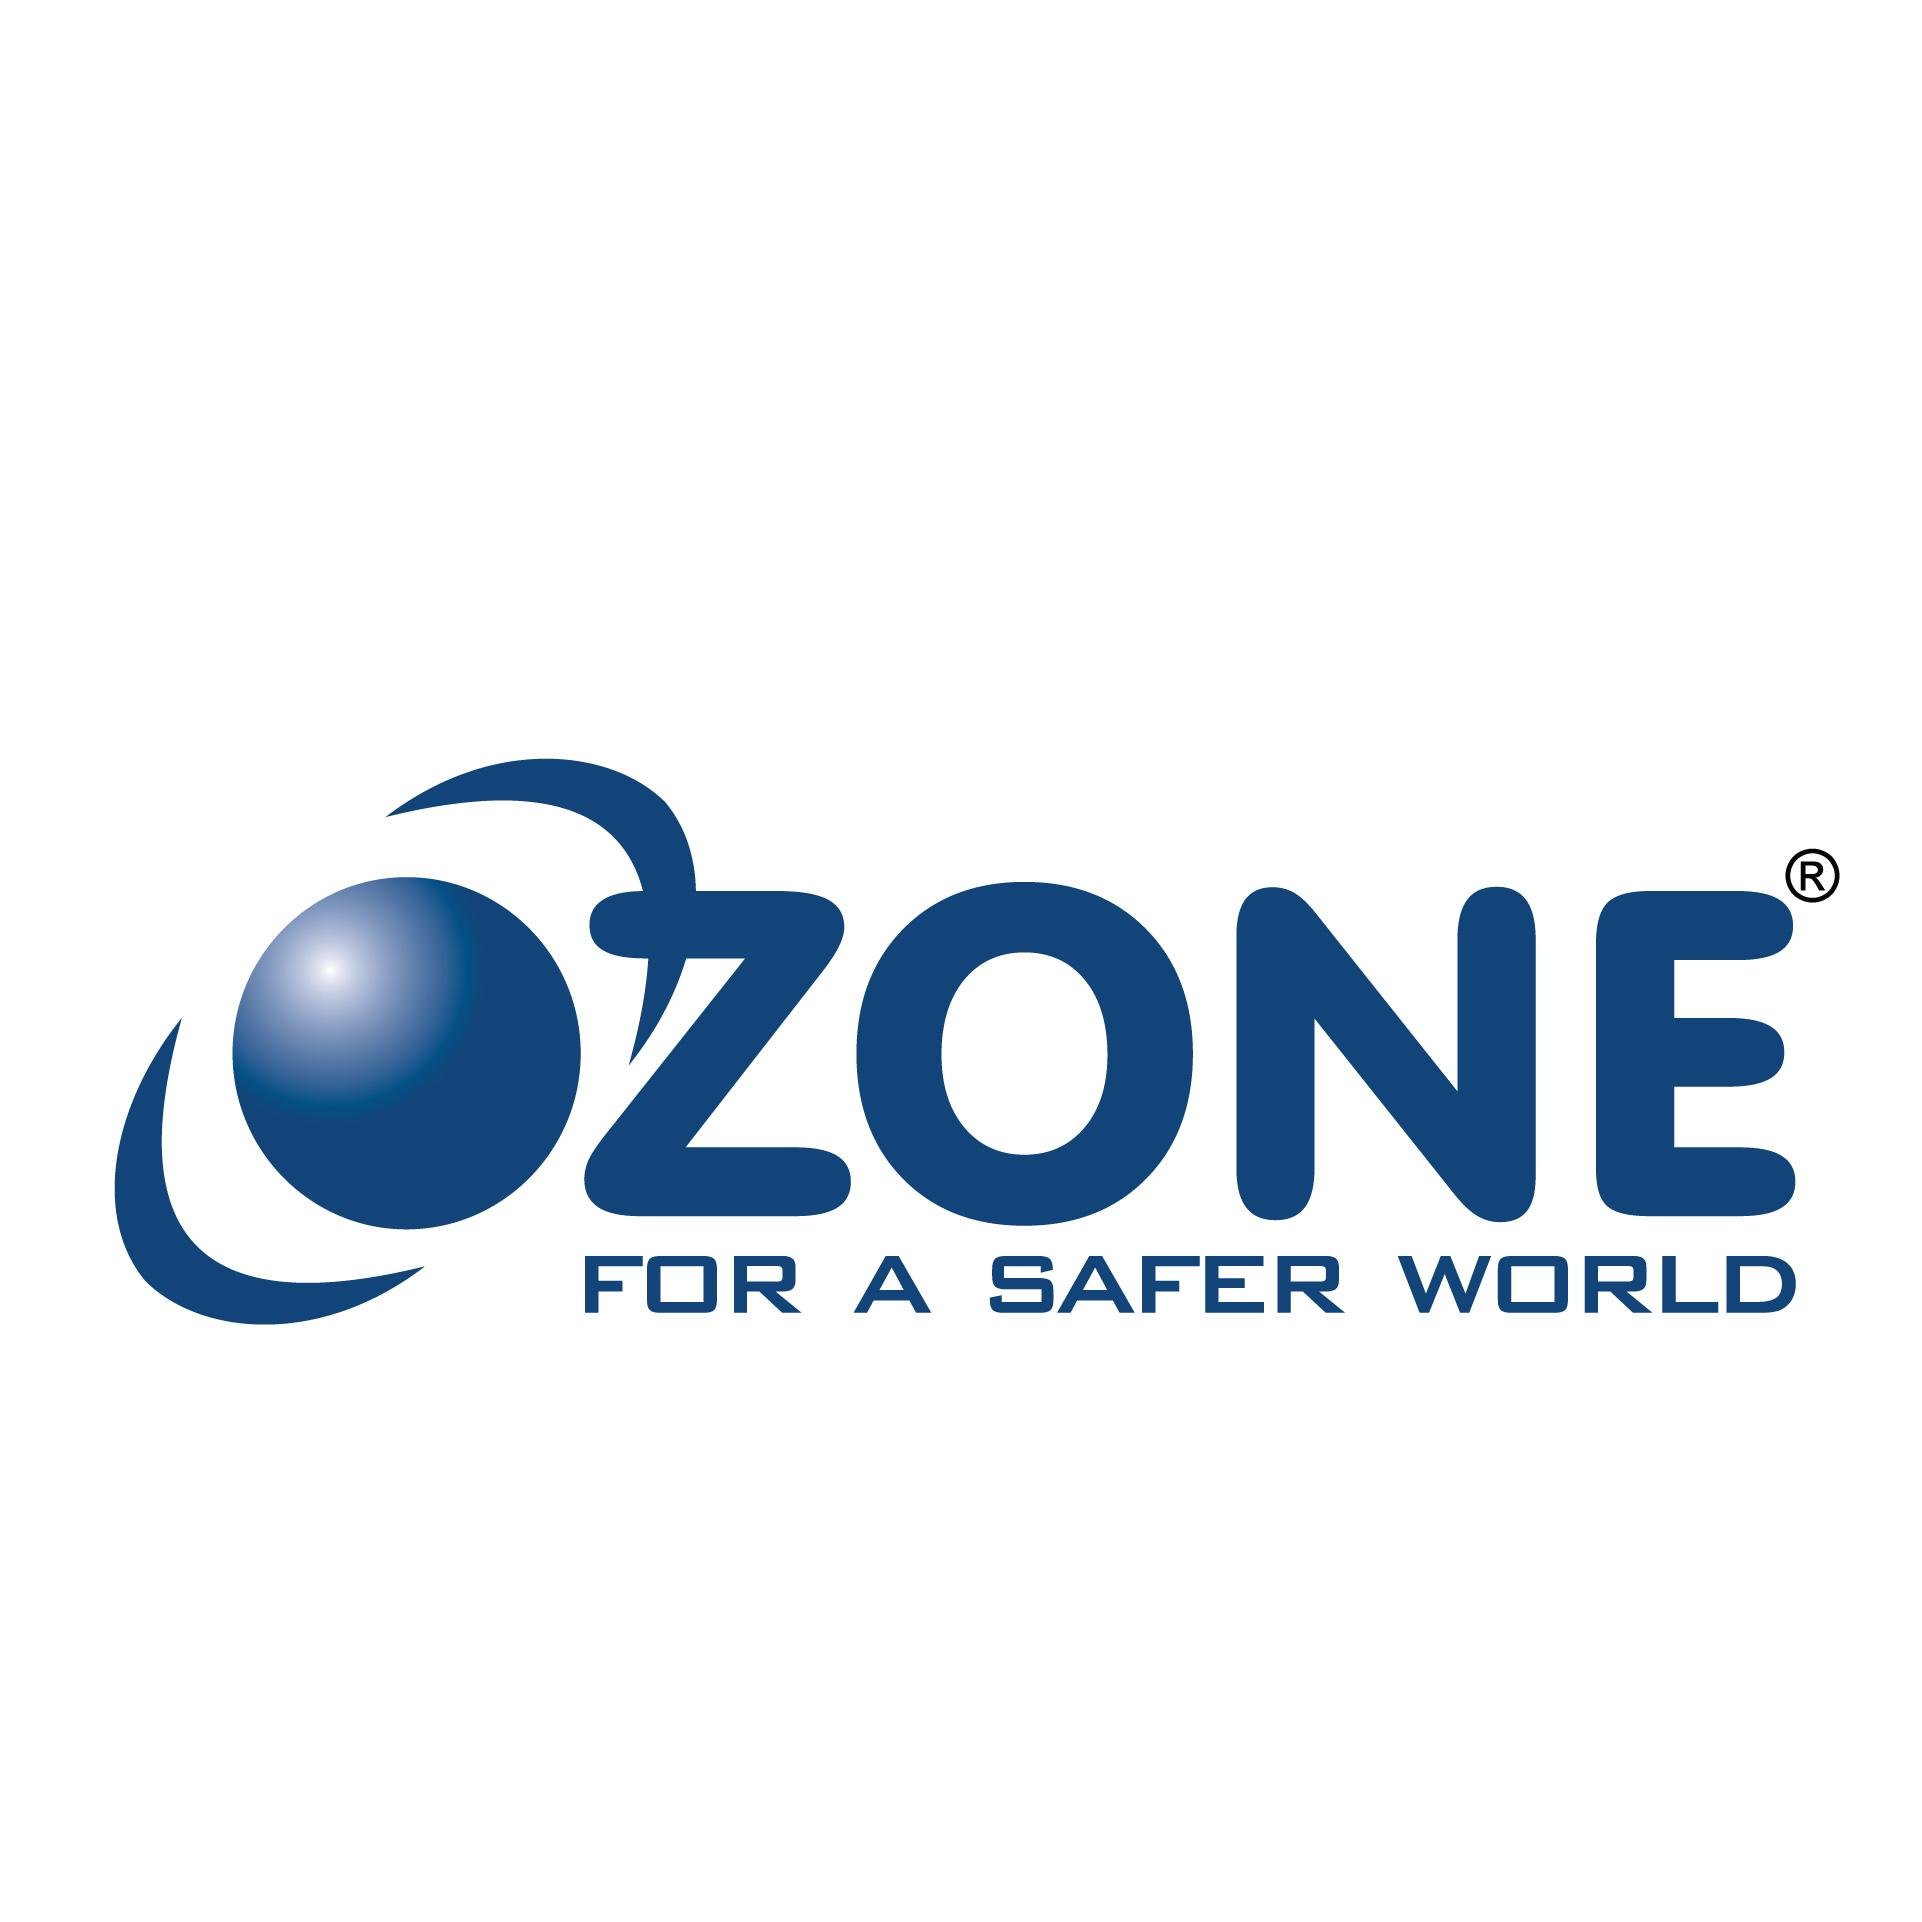 Ozone Overseas